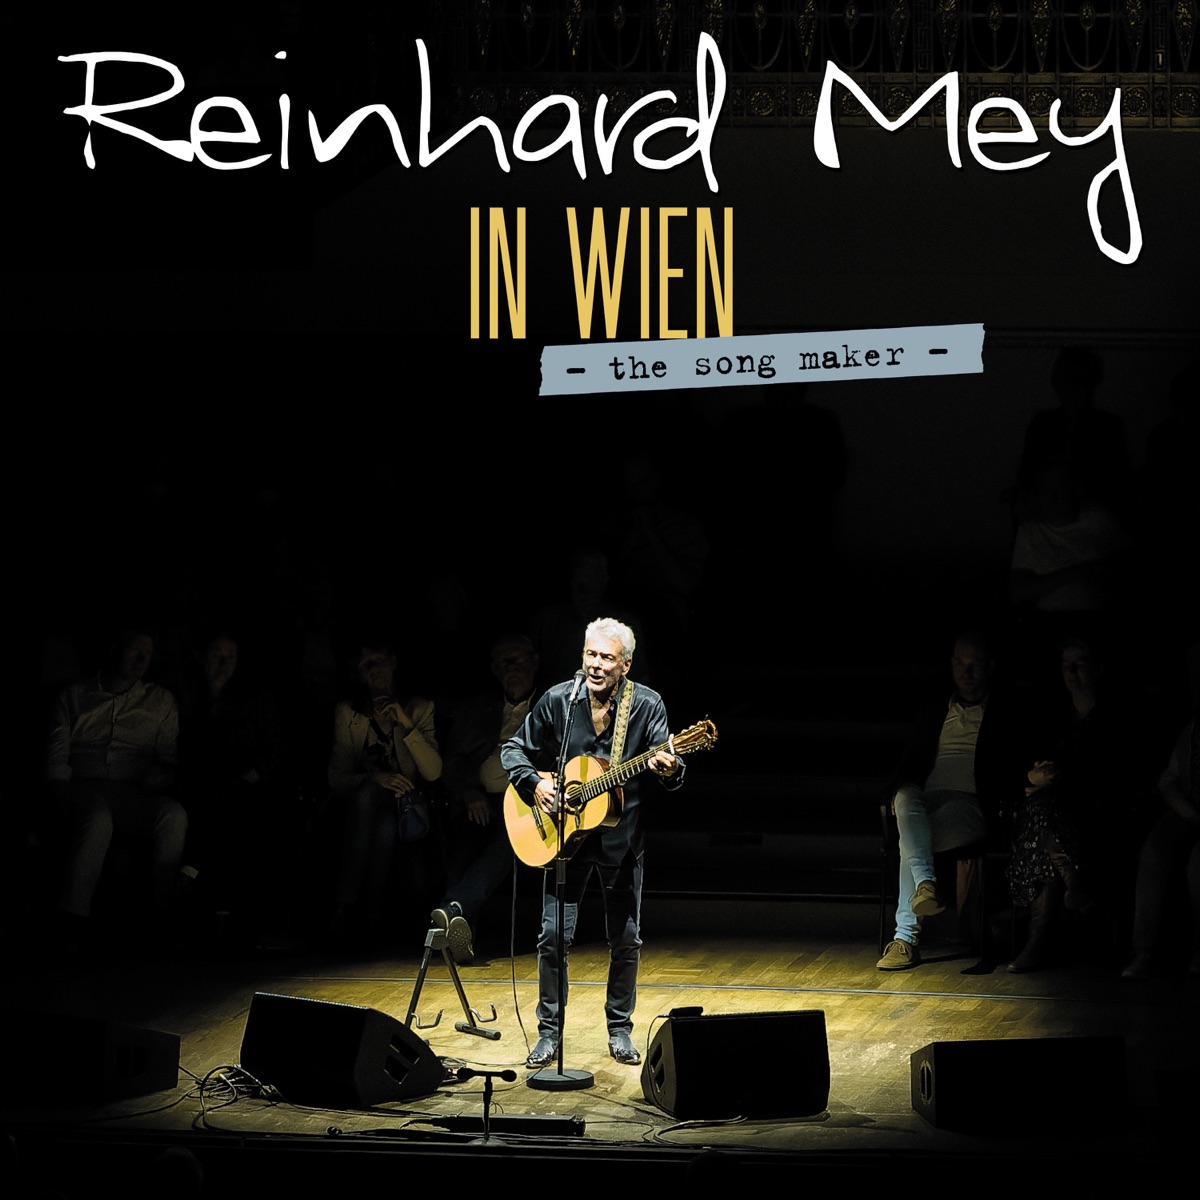 Mey Wader Wecker - Das Konzert (Live) by Reinhard Mey, Hannes Wader &  Konstantin Wecker on Apple Music